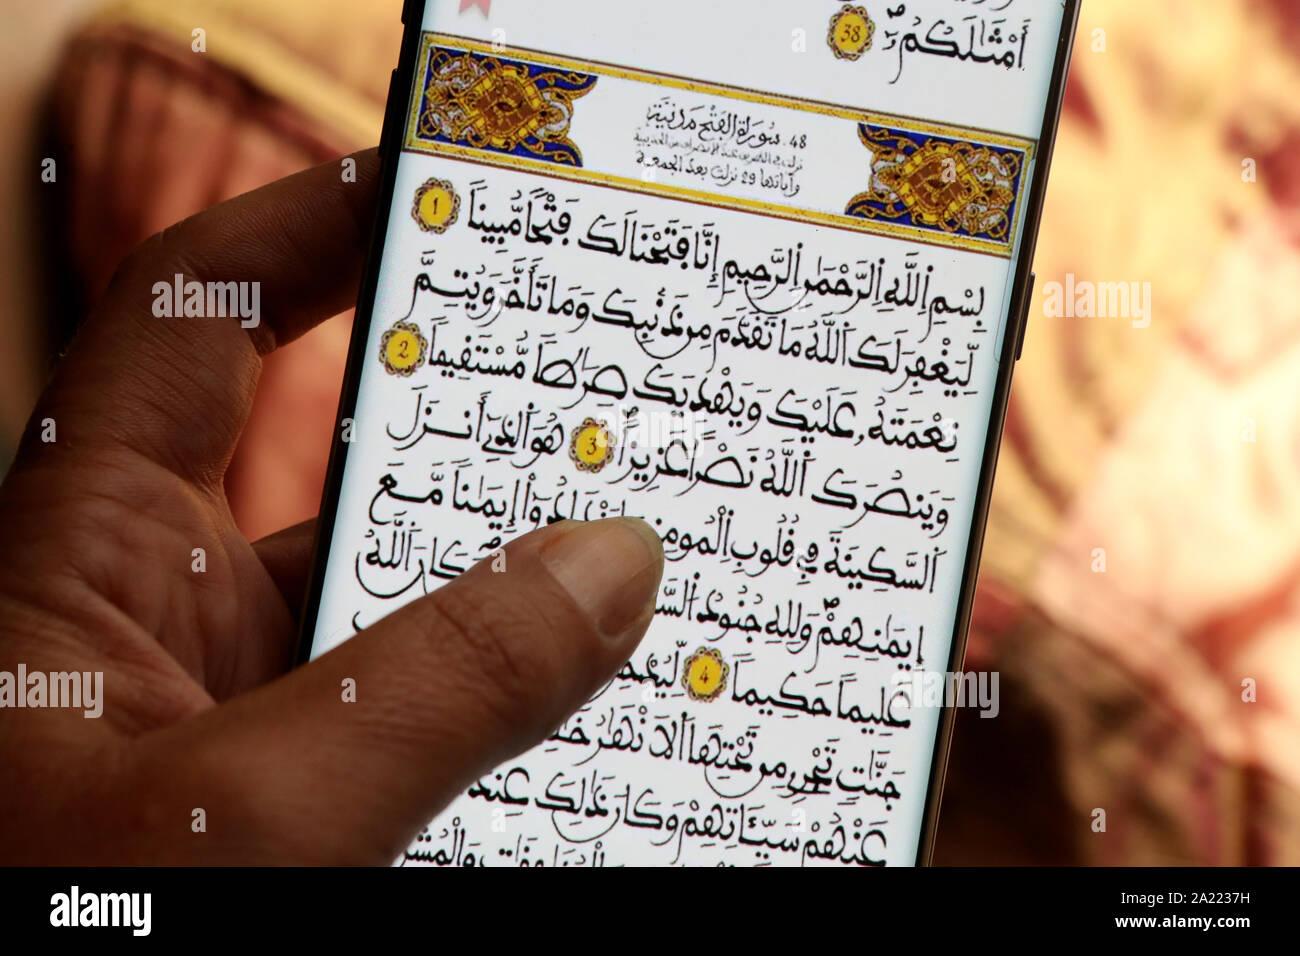 Jeune femme lisant le Koran sur Son téléphone Portable. Stockfoto